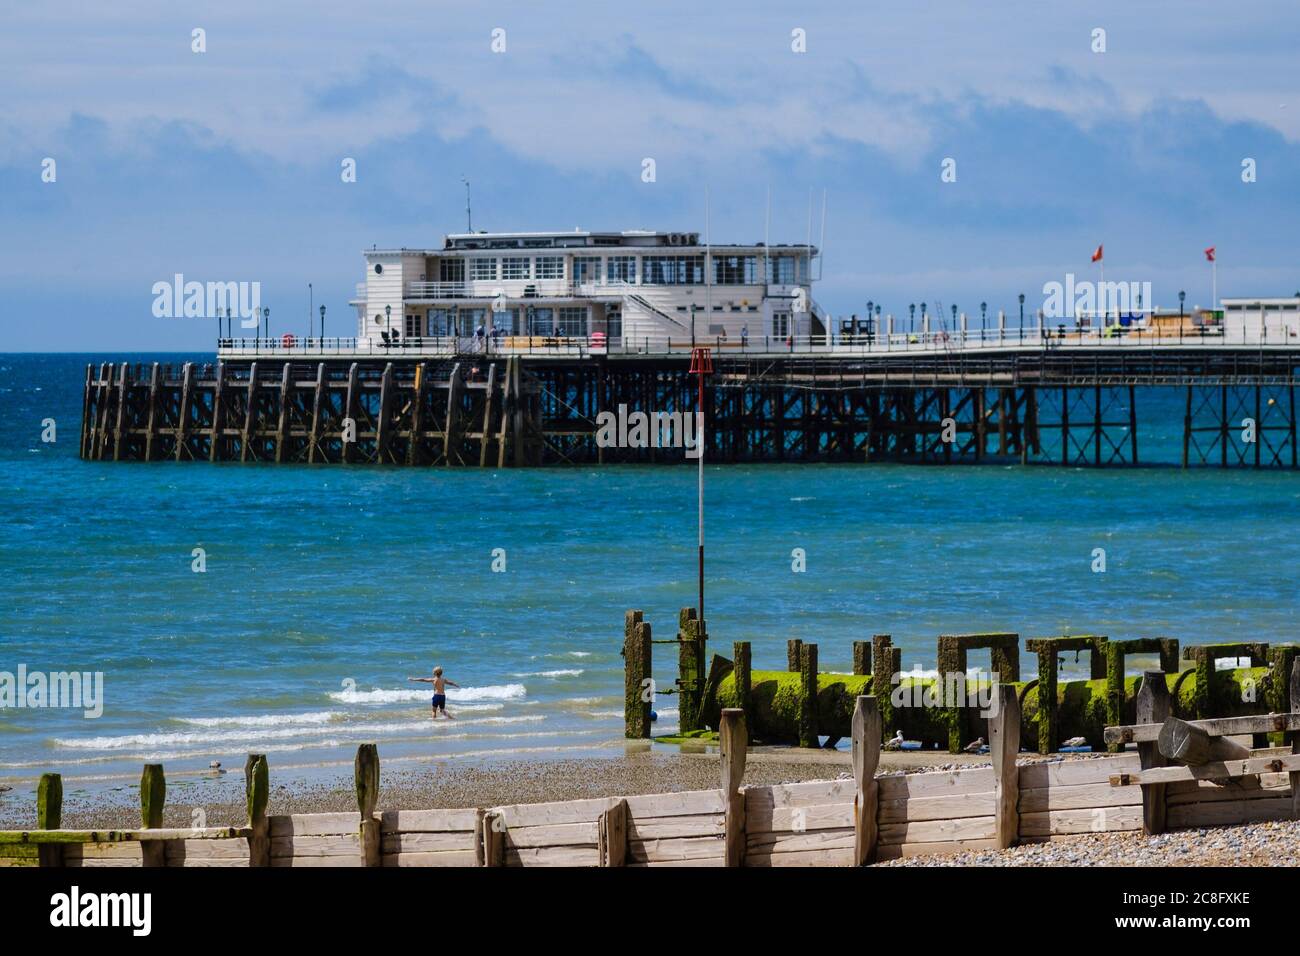 Seafront, Worthing, Reino Unido. 24 de julio de 2020. Un niño juega en el mar frente al muelle Worthing en un día soleado. Imagen de crédito: Julie Edwards/Alamy Live News Foto de stock